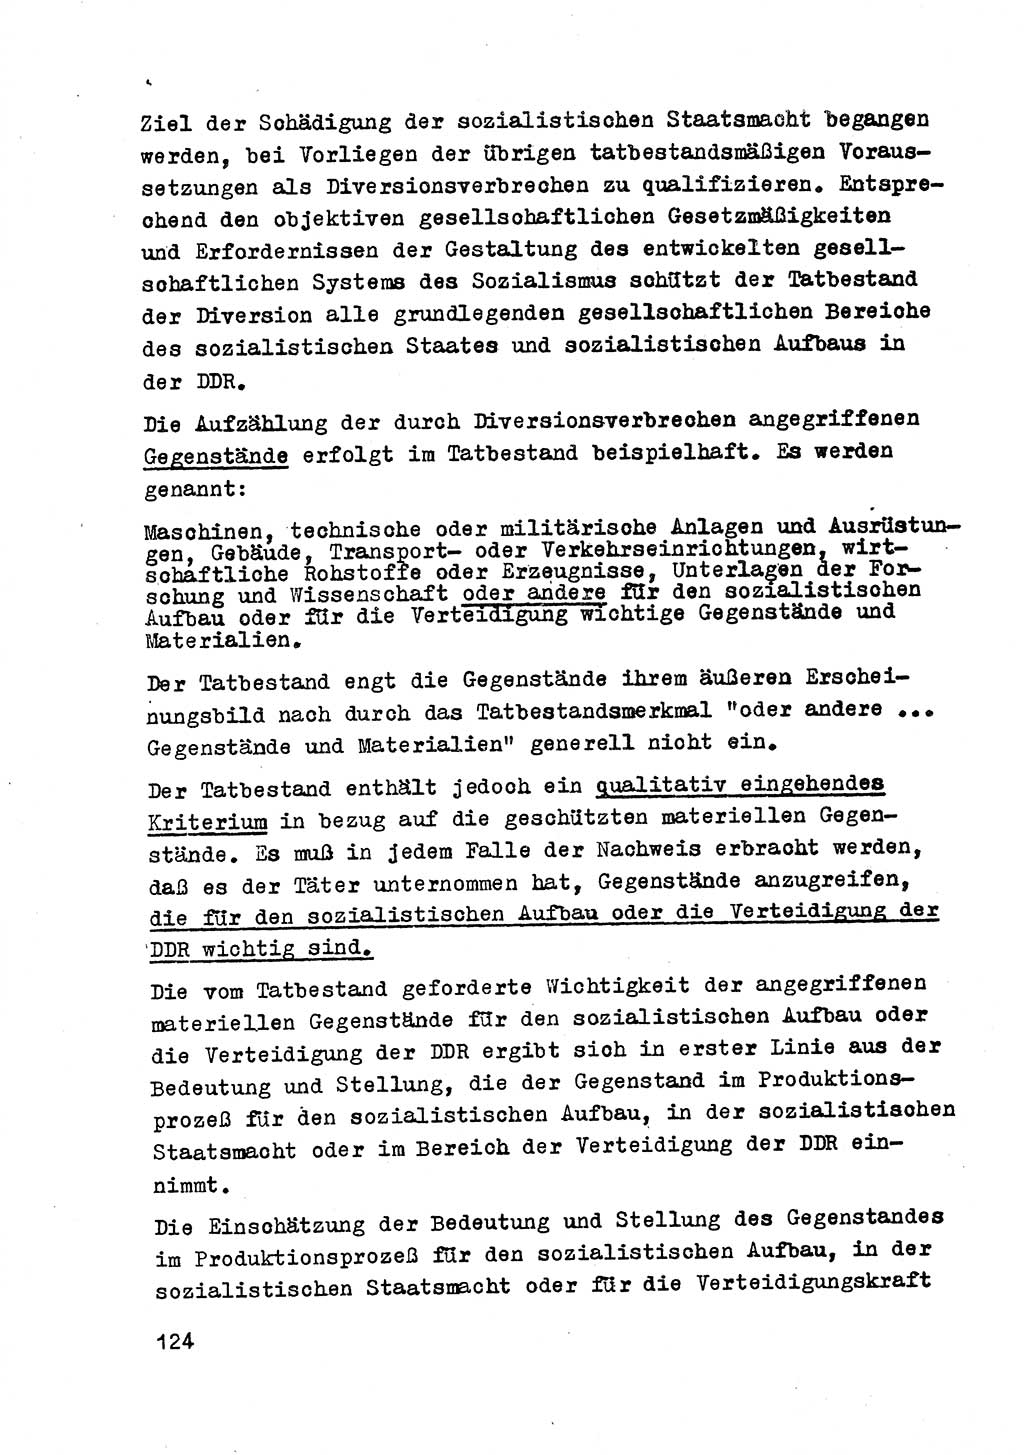 Strafrecht der DDR (Deutsche Demokratische Republik), Besonderer Teil, Lehrmaterial, Heft 2 1969, Seite 124 (Strafr. DDR BT Lehrmat. H. 2 1969, S. 124)